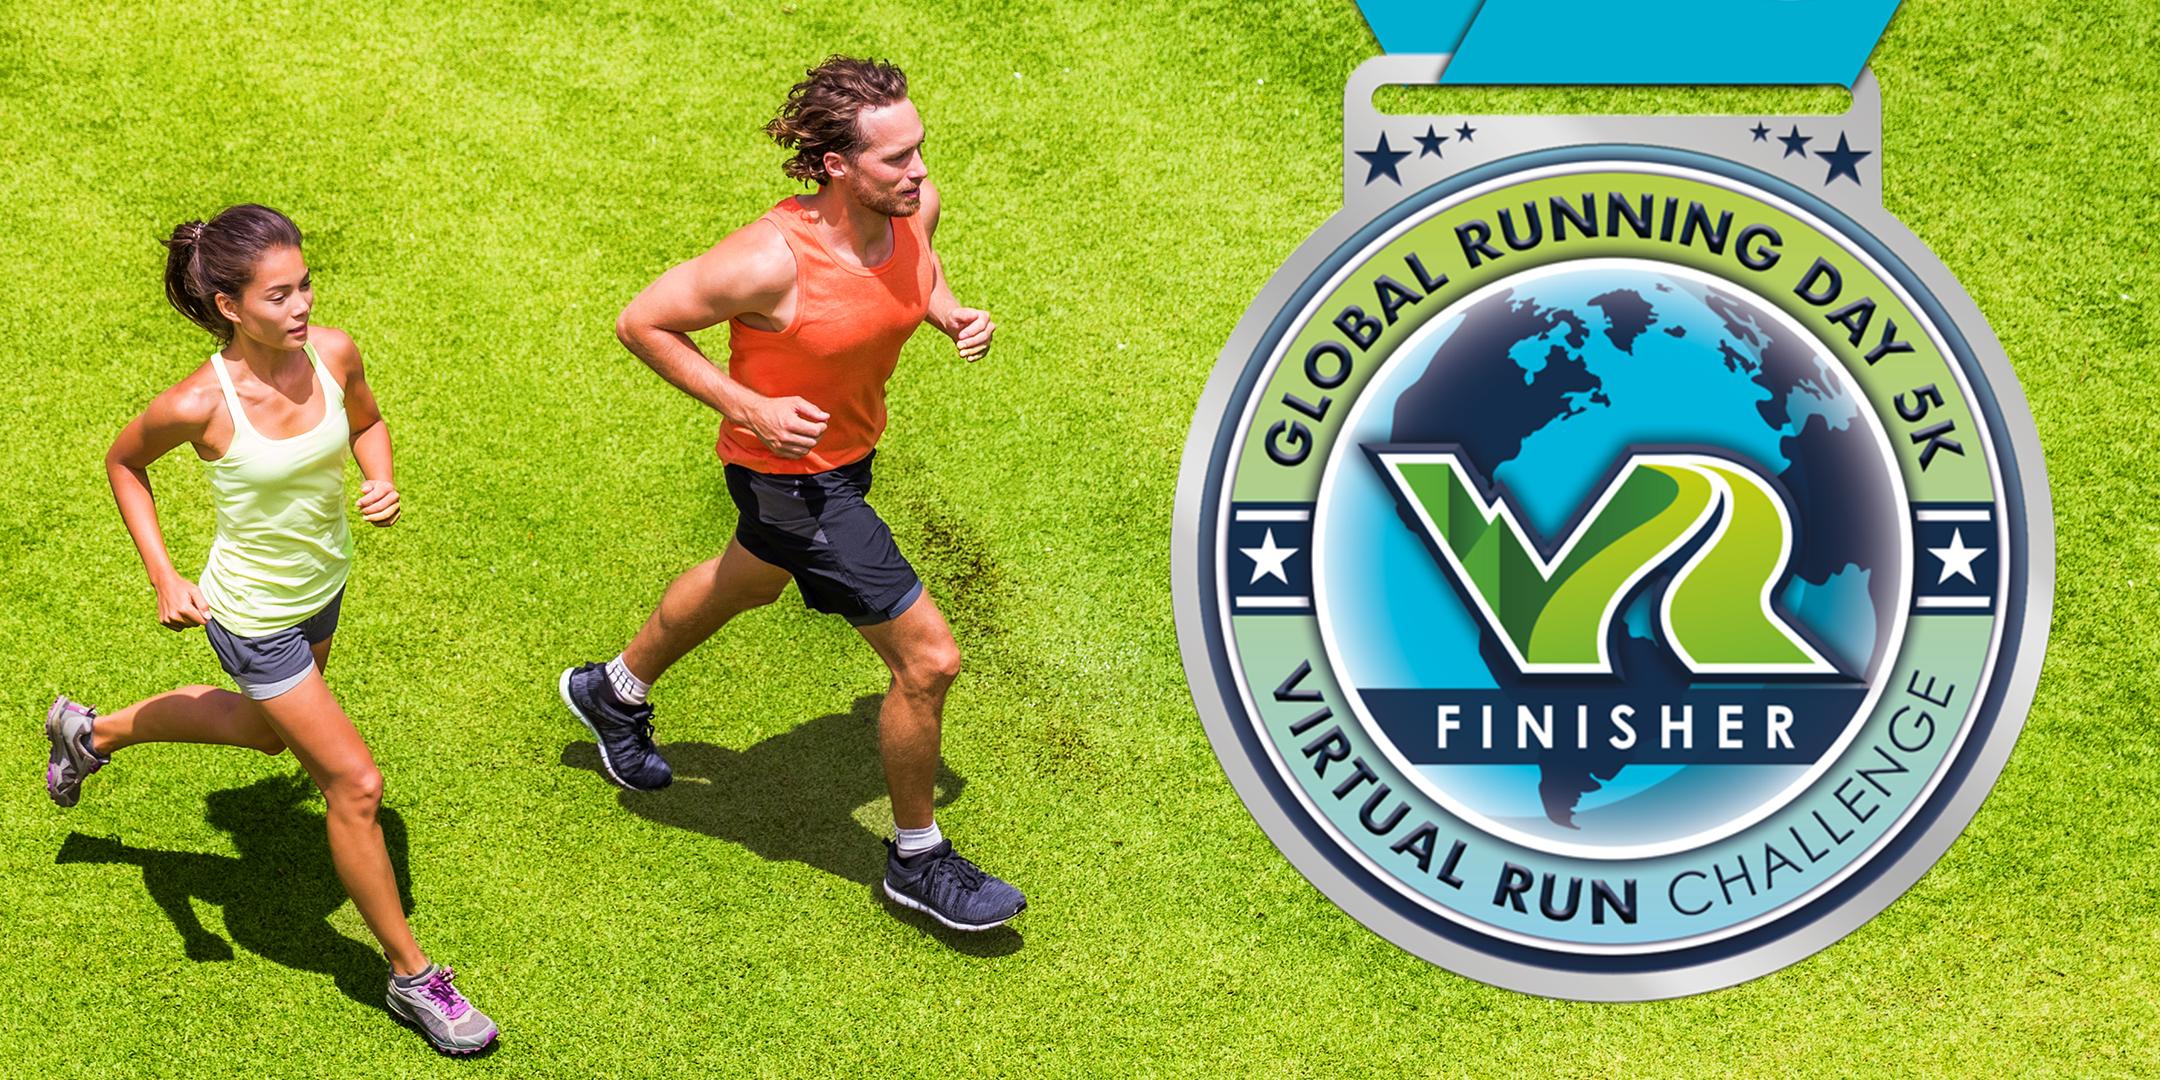 2020 Global Running Day Free Virtual 5k - Baton Rouge